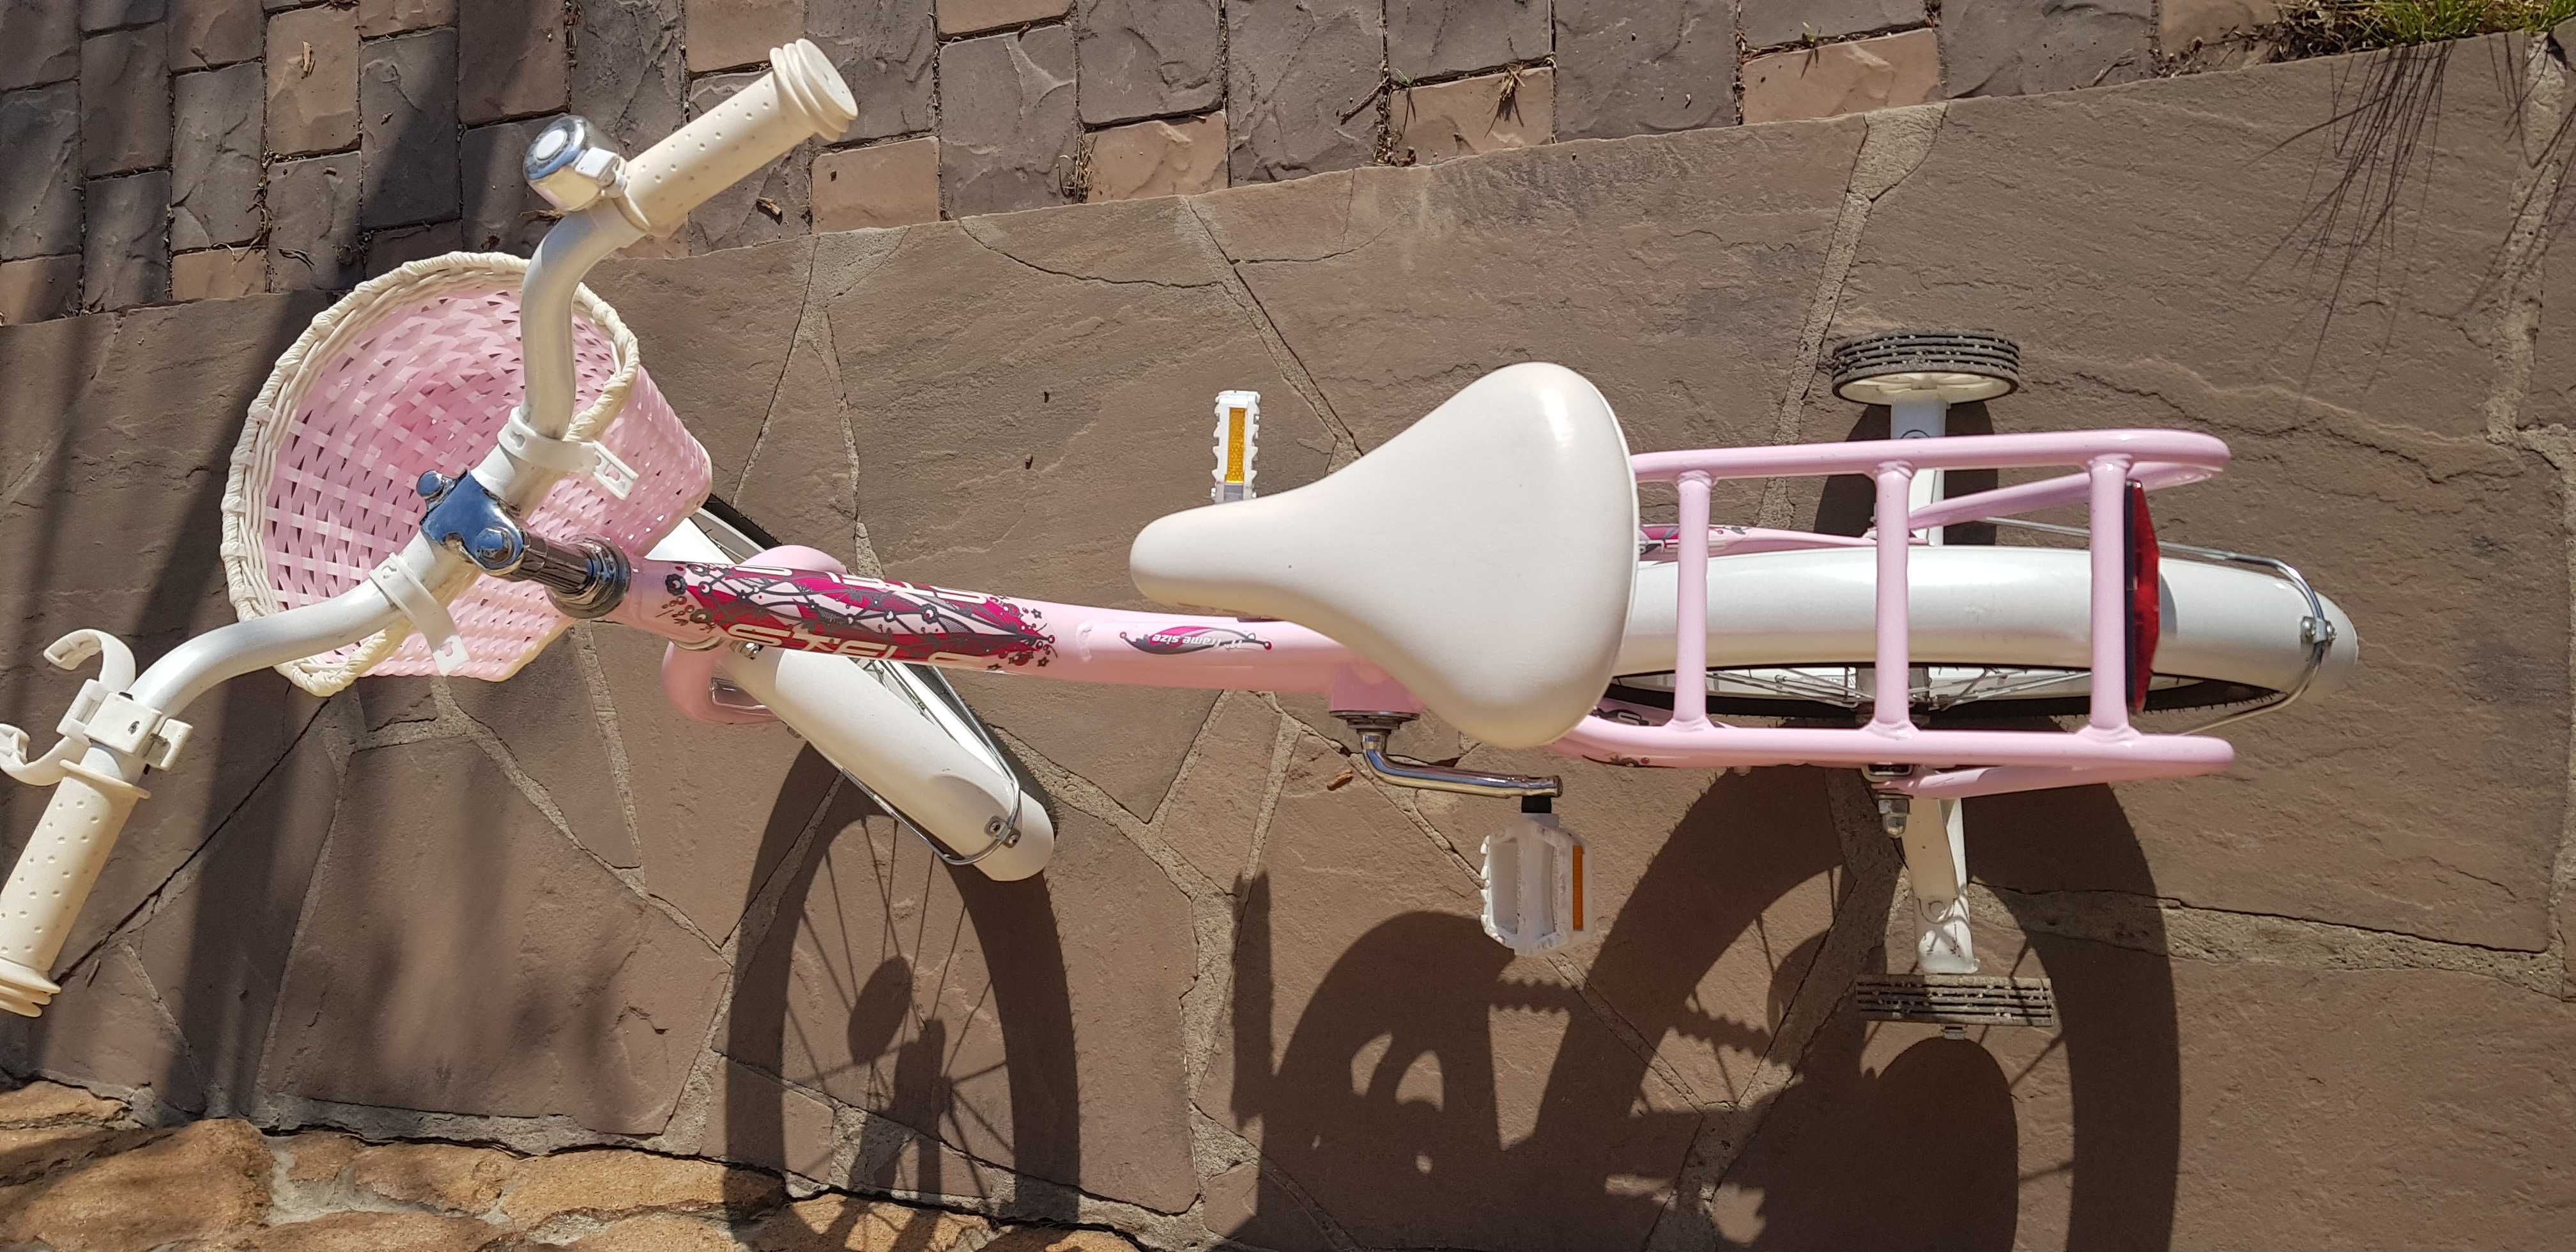 Детский велосипед STELS Flyte для девочки сиреневый